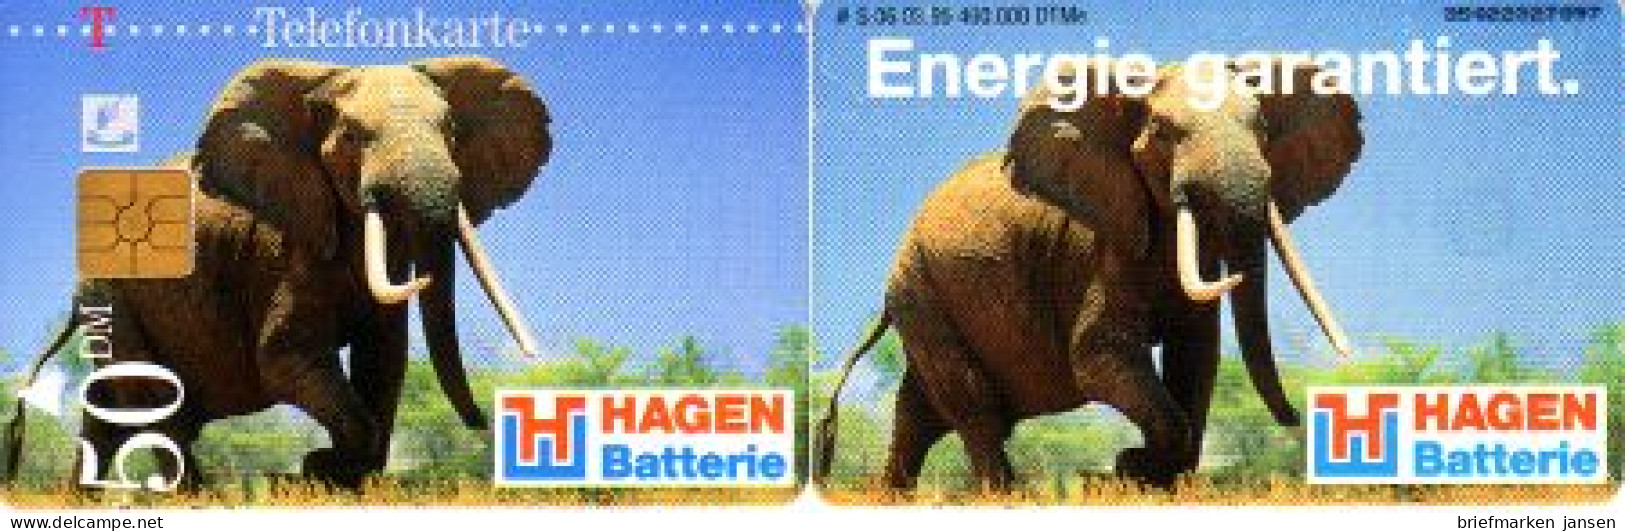 Telefonkarte S 06 03.95 Hagen, Elefant, DD 3502 - Non Classificati